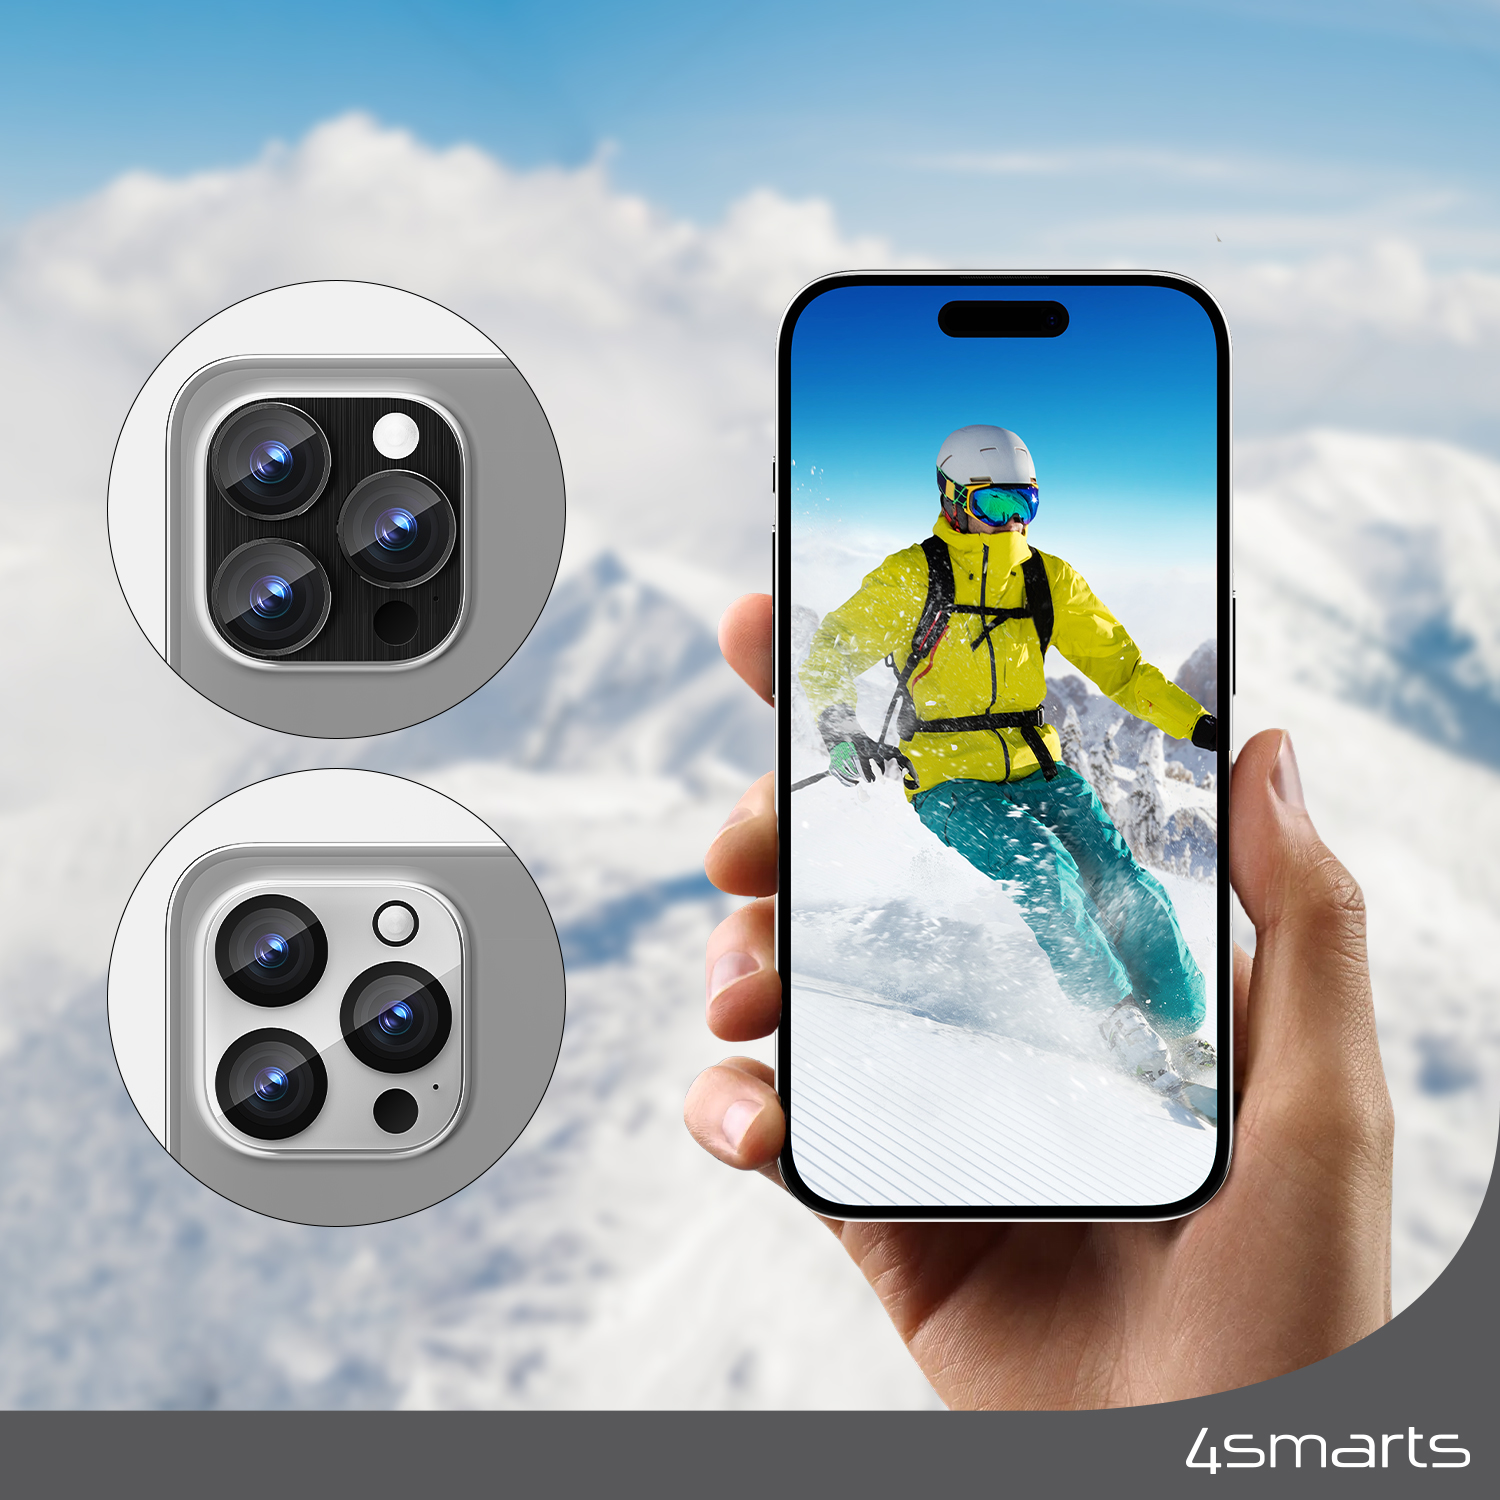 Das speziell entwickelte 4smarts Lens Protector StyleGlass für Apple iPhone 15 Pro / 15 Pro Max 2er Set schützt die wertvolle Linse deiner iPhone-Kamera auch beim Skifahren, ohne die Bildqualität zu beeinflussen.